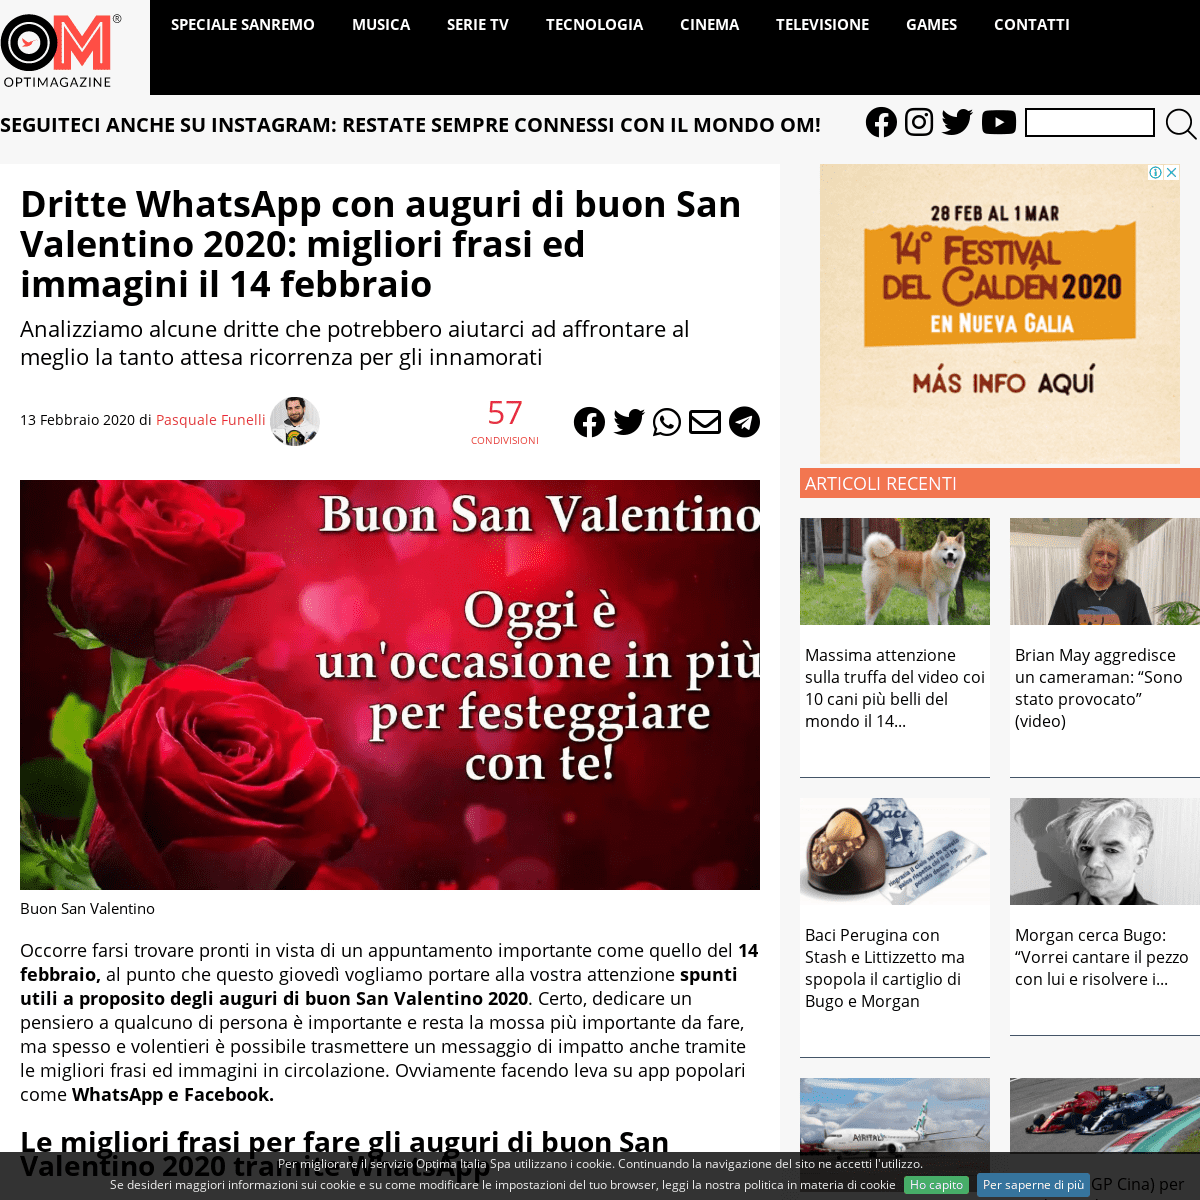 A complete backup of www.optimagazine.com/2020/02/13/dritte-whatsapp-con-auguri-di-buon-san-valentino-2020-migliori-frasi-ed-imm